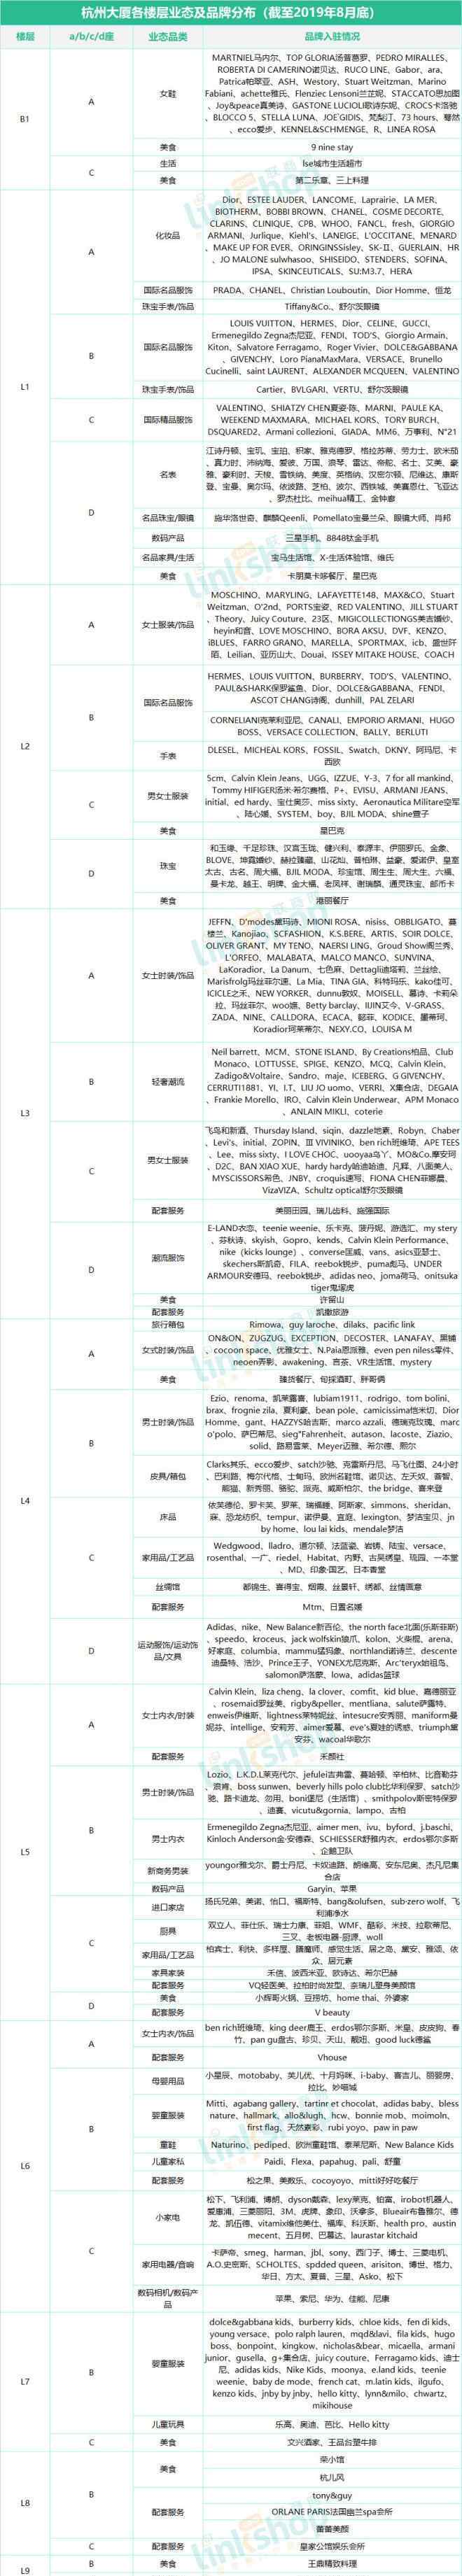 杭州购物 杭州17座购物中心、百货最全品牌曝光